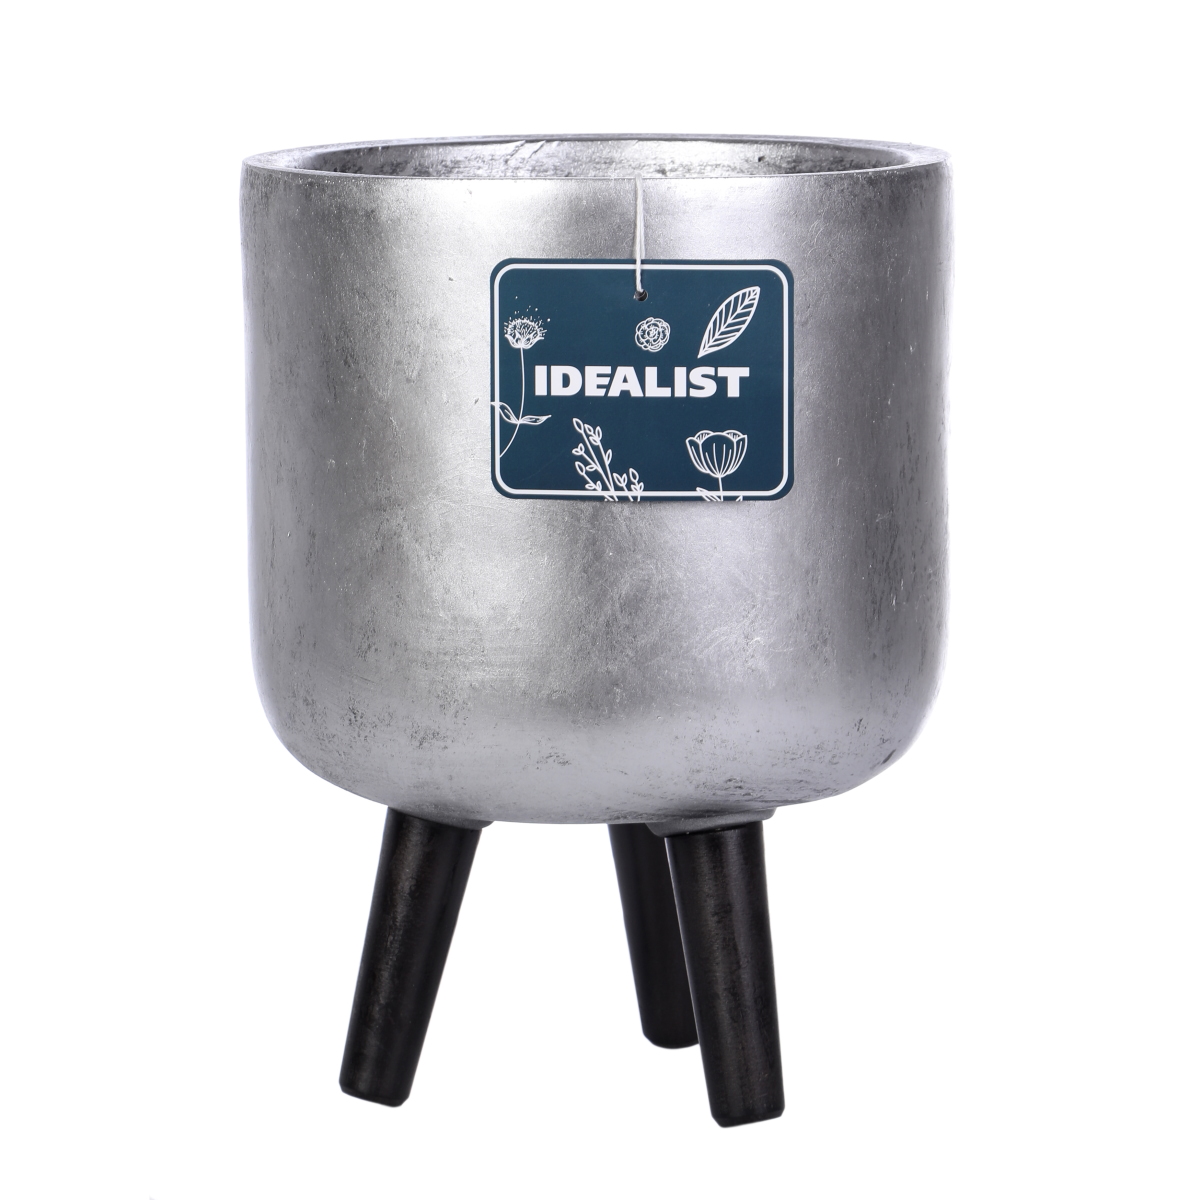 IDEALIST Lite Concrete Effect Round Planter on Legs, Round Pot Plant Stand Indoor